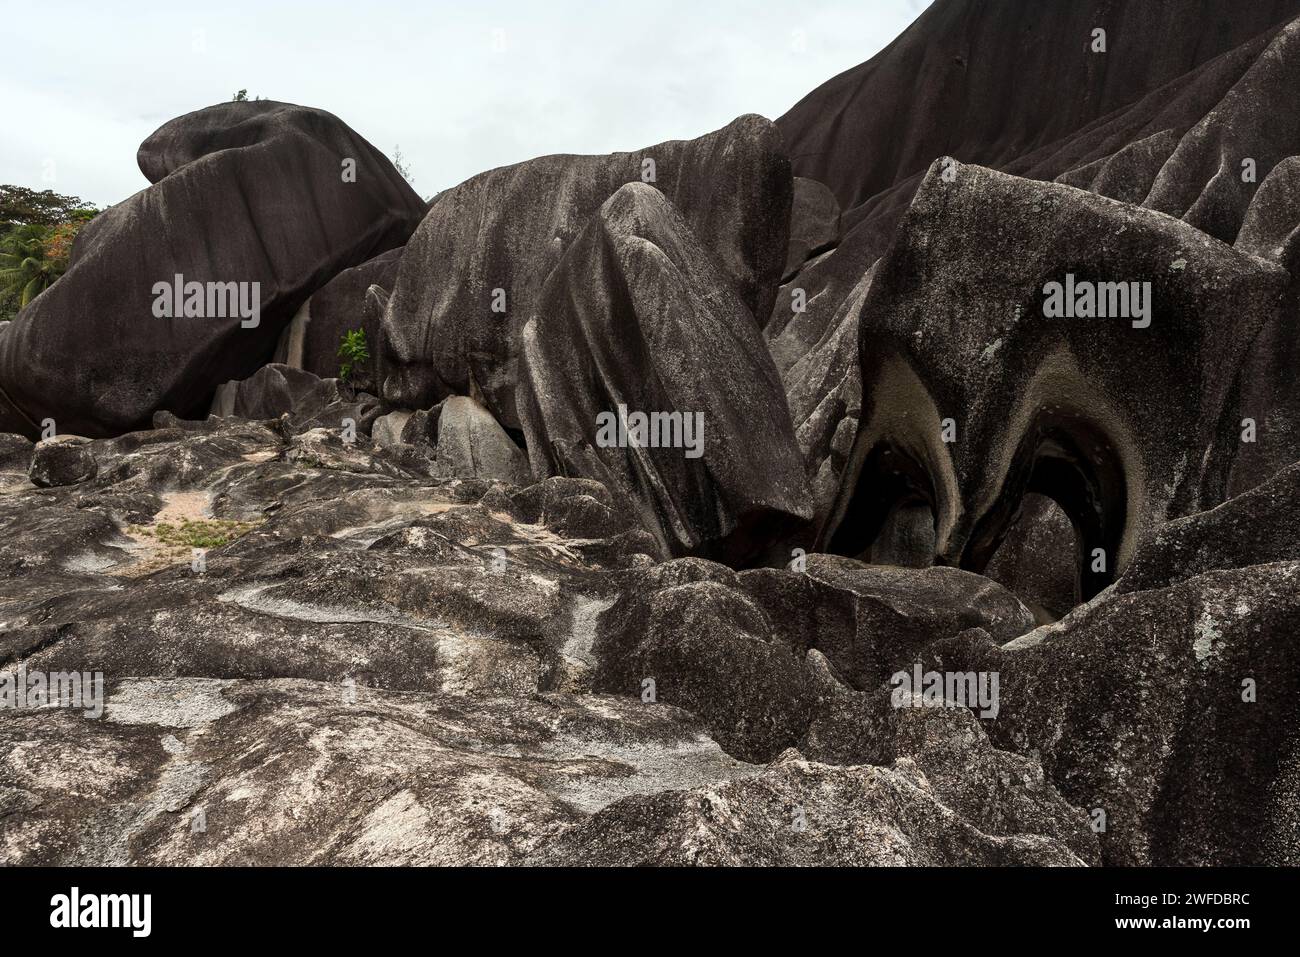 Roches granitres noires du Giant Union Rock. Monument naturel de l'île de la Digue, Seychelles Banque D'Images